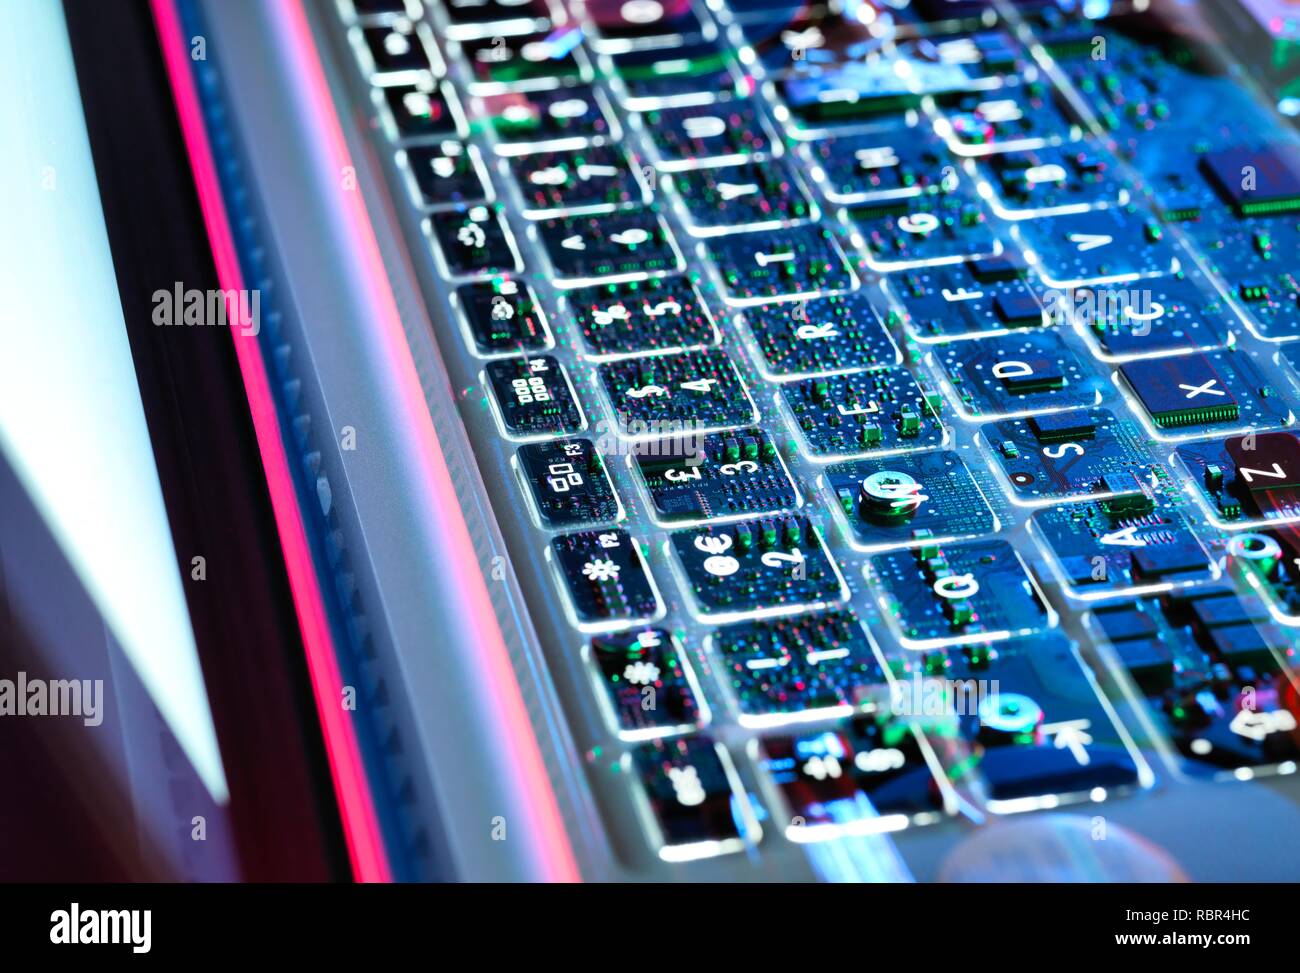 Double exposition d'un clavier d'ordinateur portable montrant l'électronique en dessous. Banque D'Images